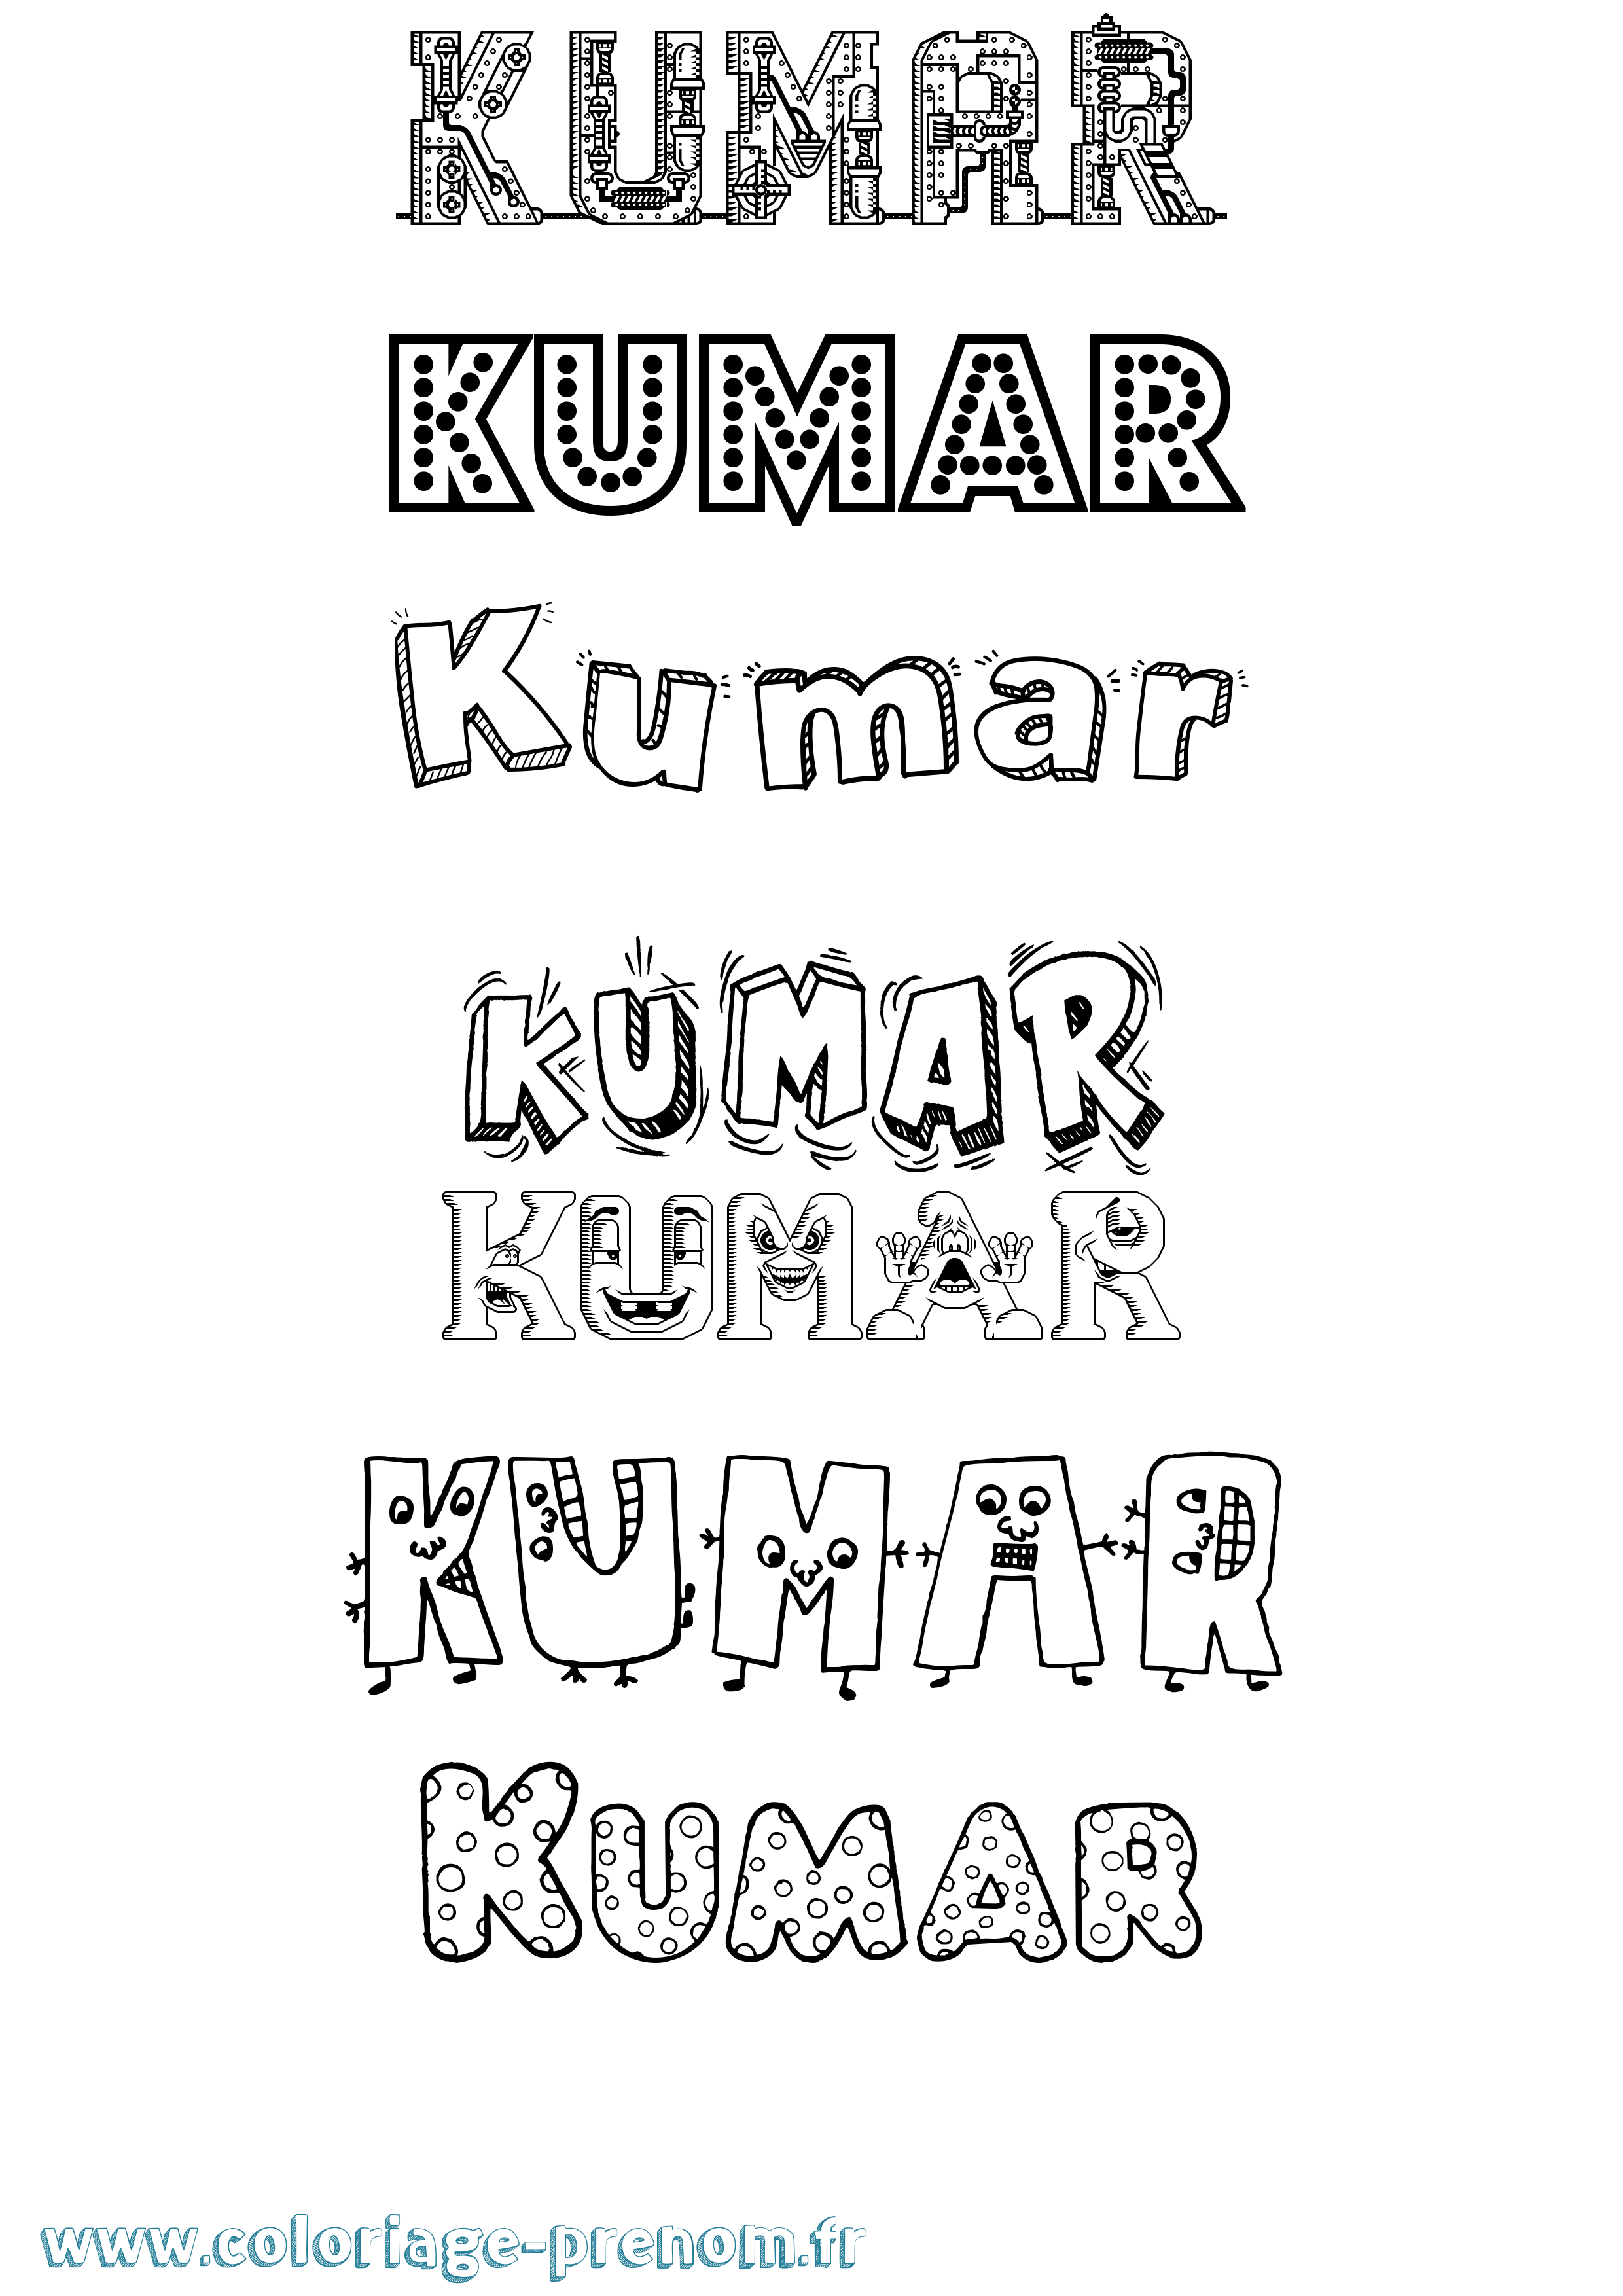 Coloriage prénom Kumar Fun